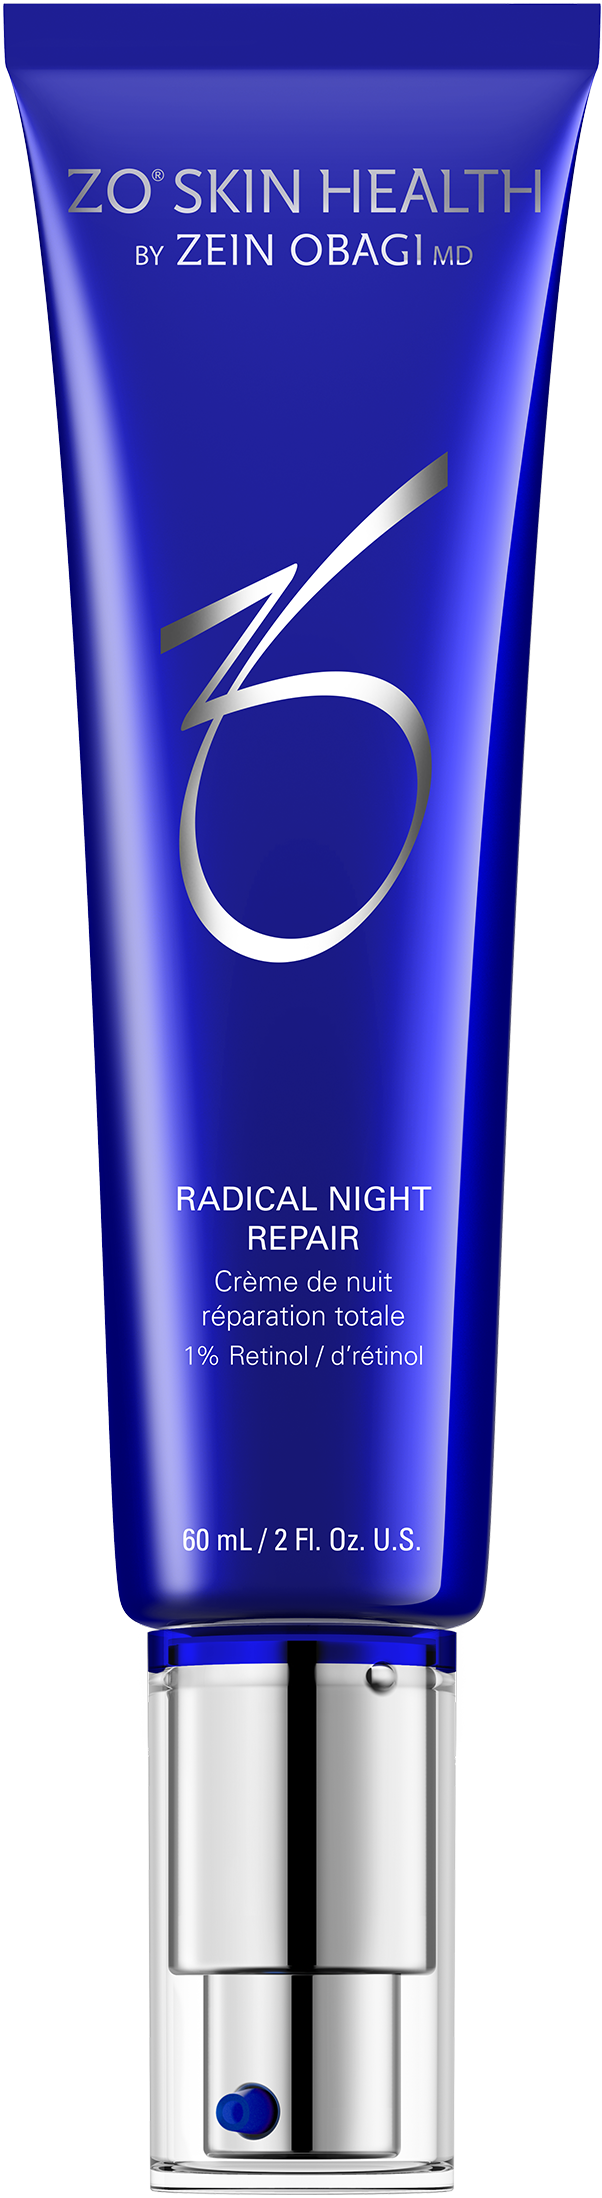 Radical Night Repair - Avebelle Skin